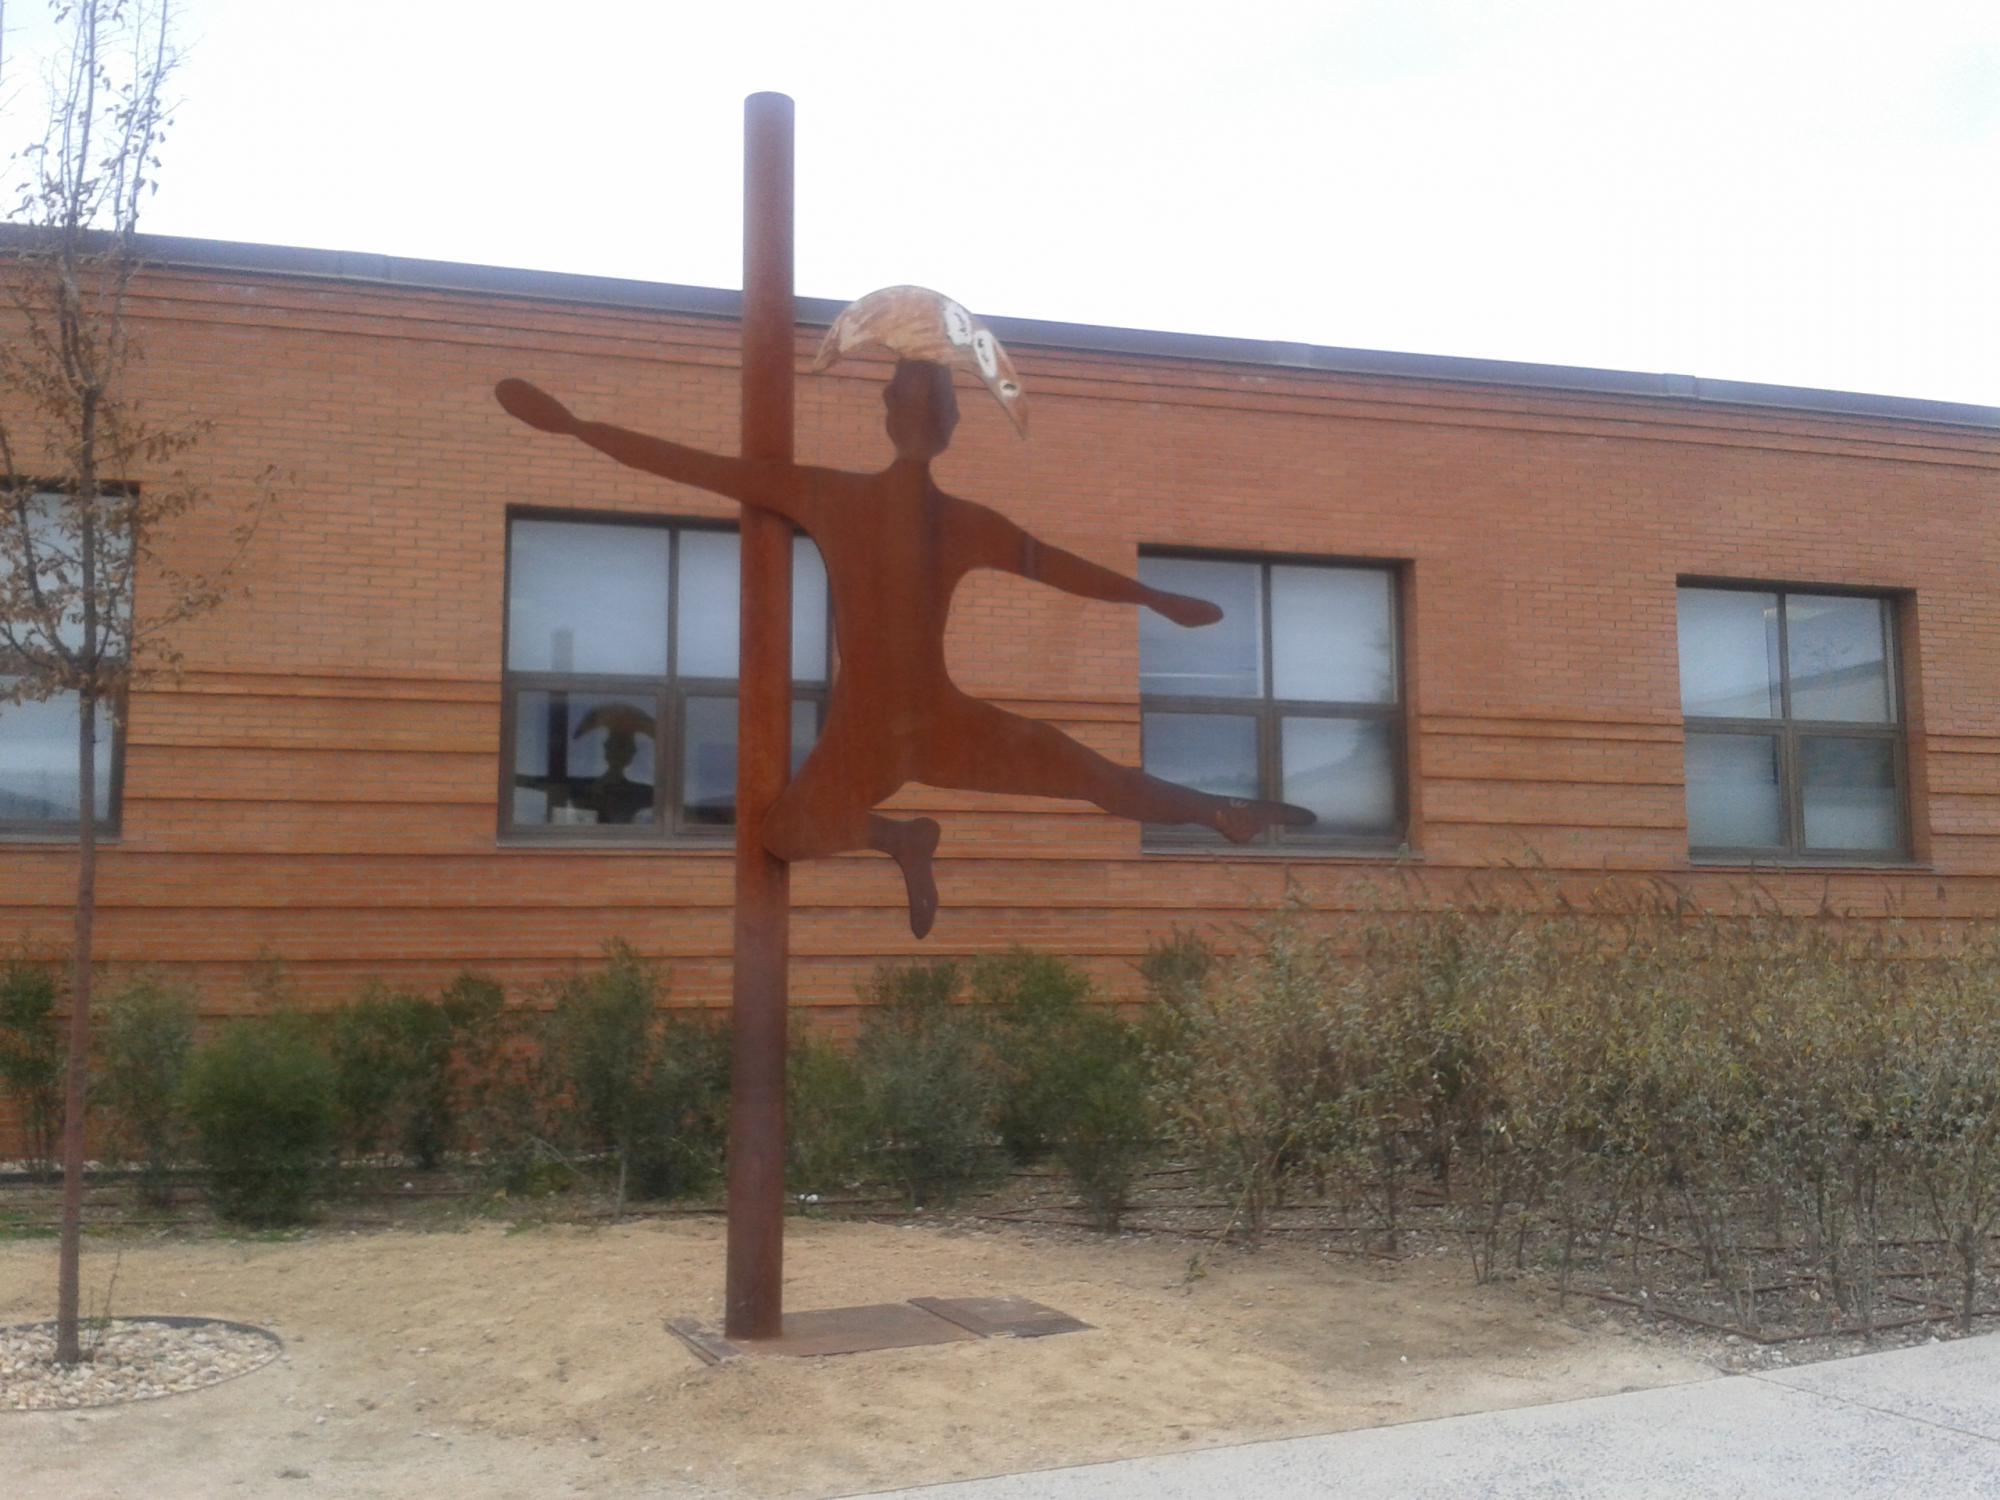 Nueva ubicación para la escultura “Equilibrio”